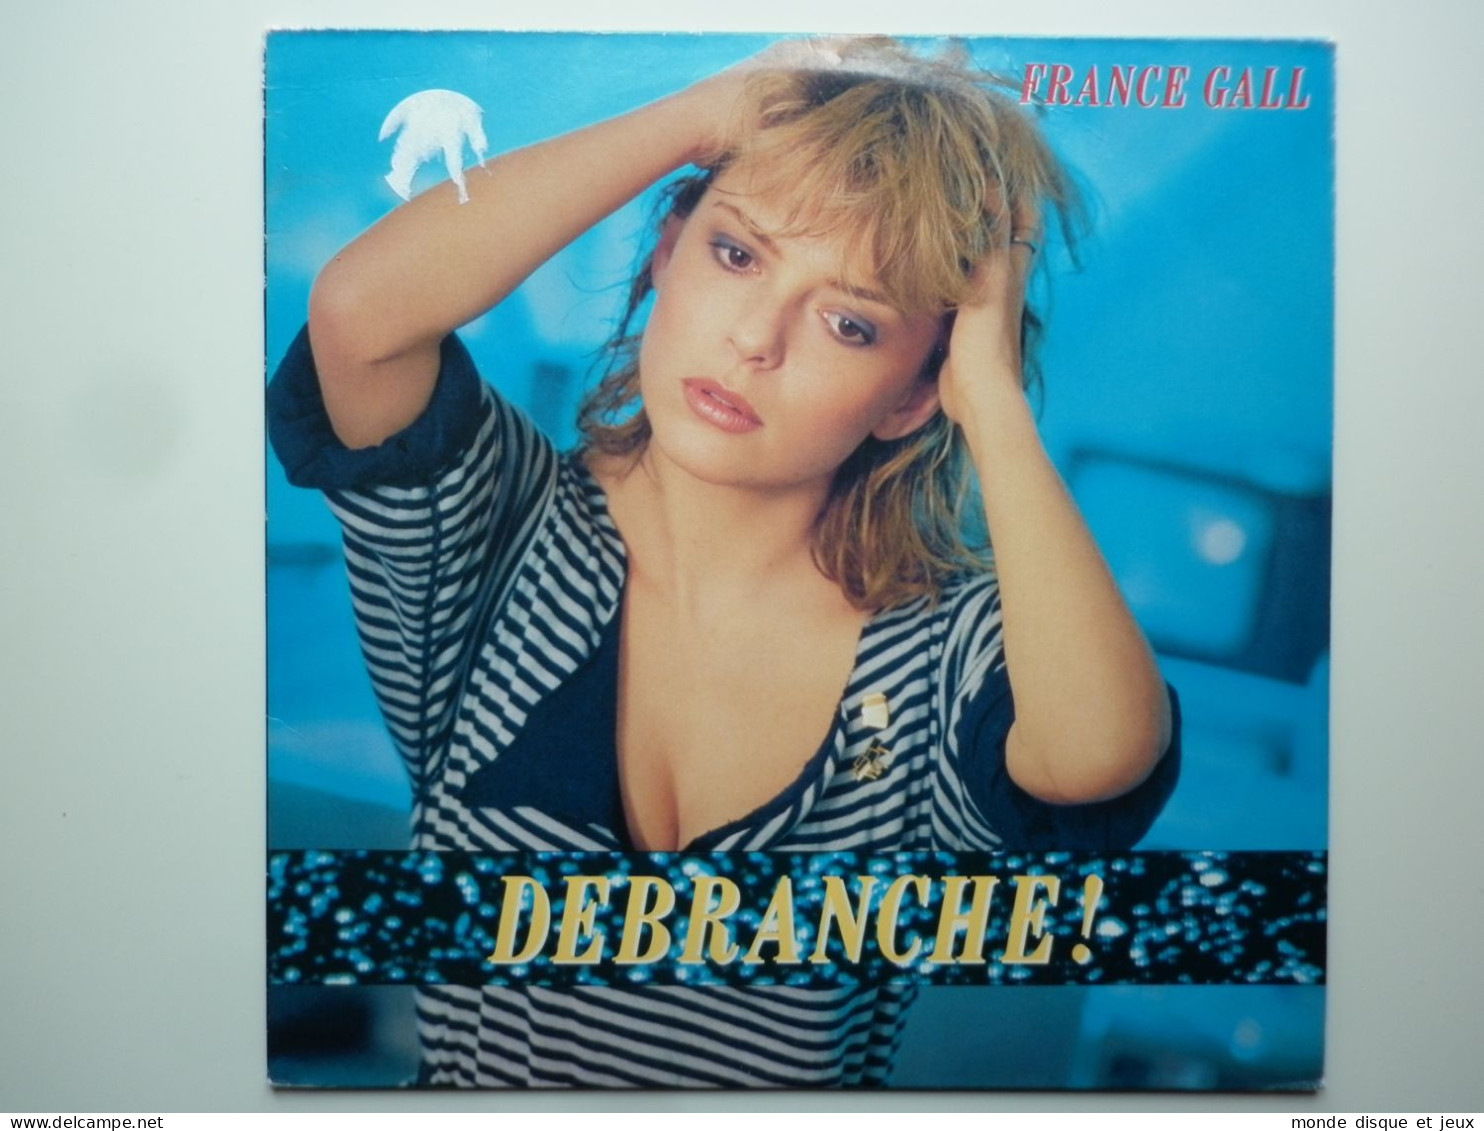 France Gall Album 33Tours Vinyle Débranche ! Réédition - Other - French Music